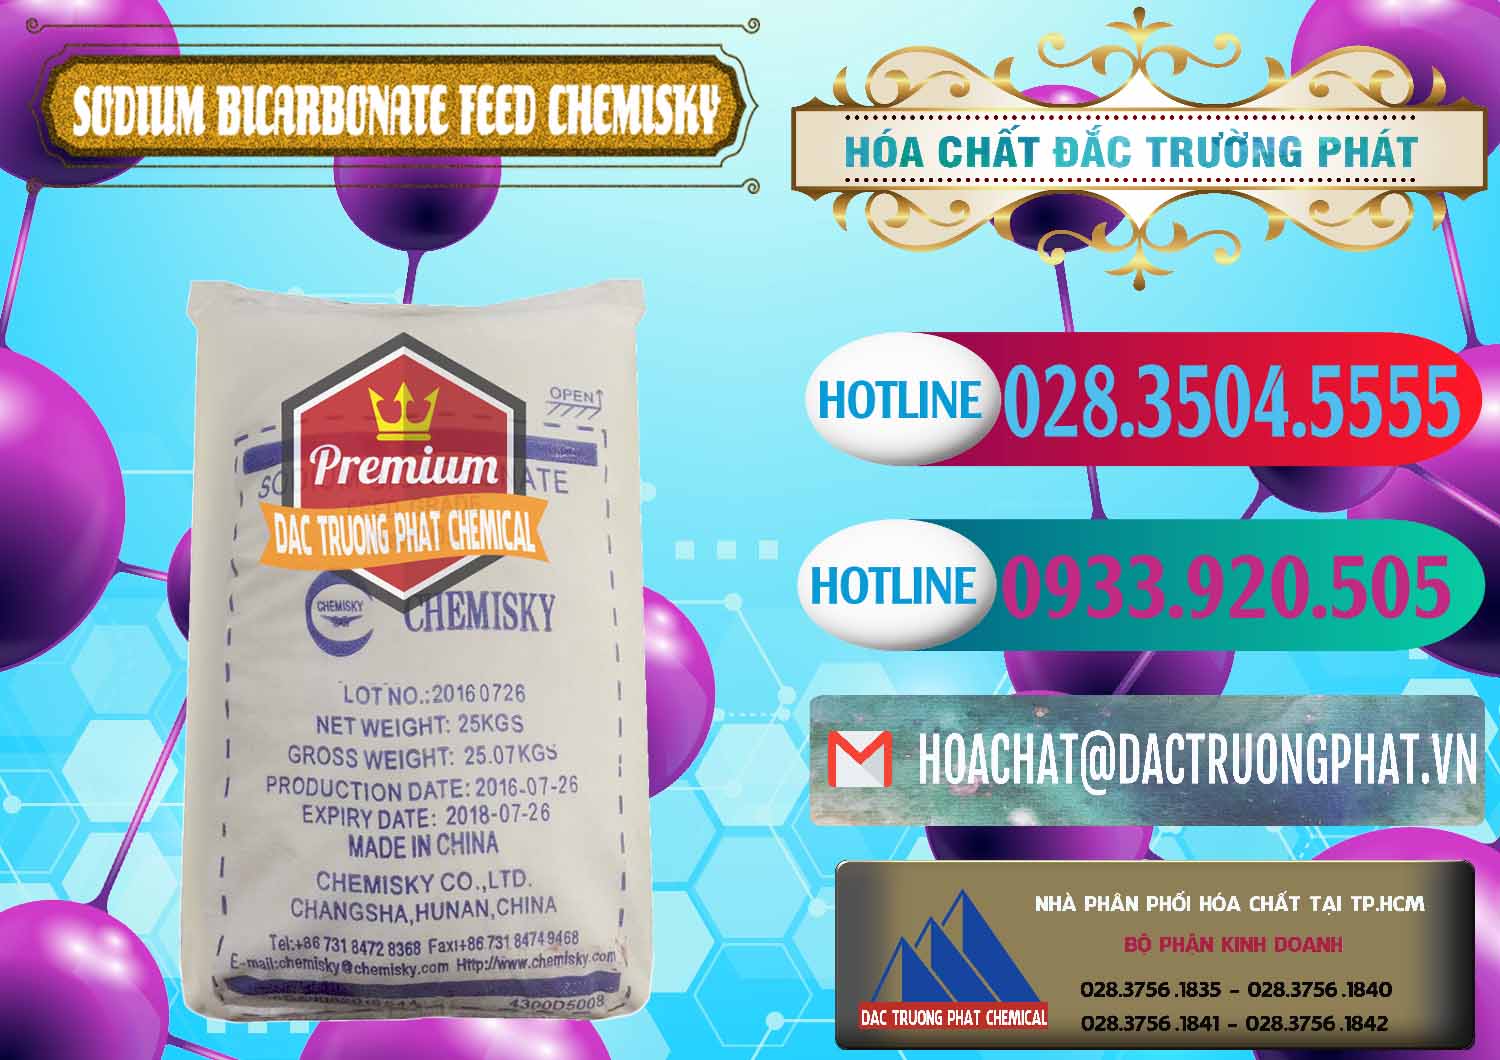 Chuyên bán và cung cấp Sodium Bicarbonate – Bicar NaHCO3 Feed Grade Chemisky Trung Quốc China - 0264 - Chuyên nhập khẩu ( phân phối ) hóa chất tại TP.HCM - truongphat.vn